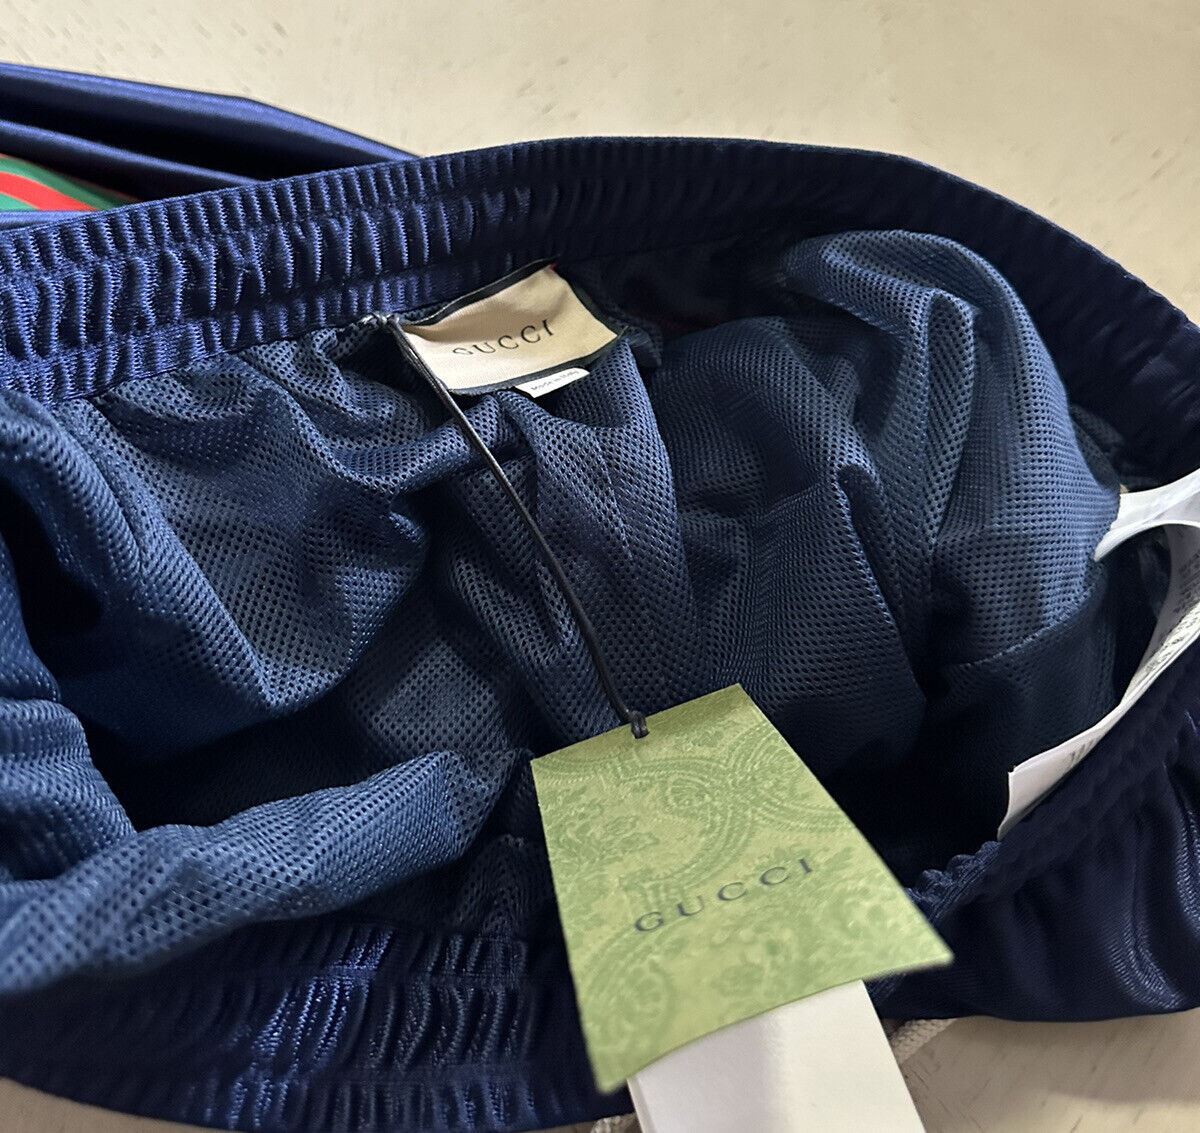 Новые мужские спортивные брюки из технического полистера Gucci за 1250 долларов, синие, размер XXL-XXXL